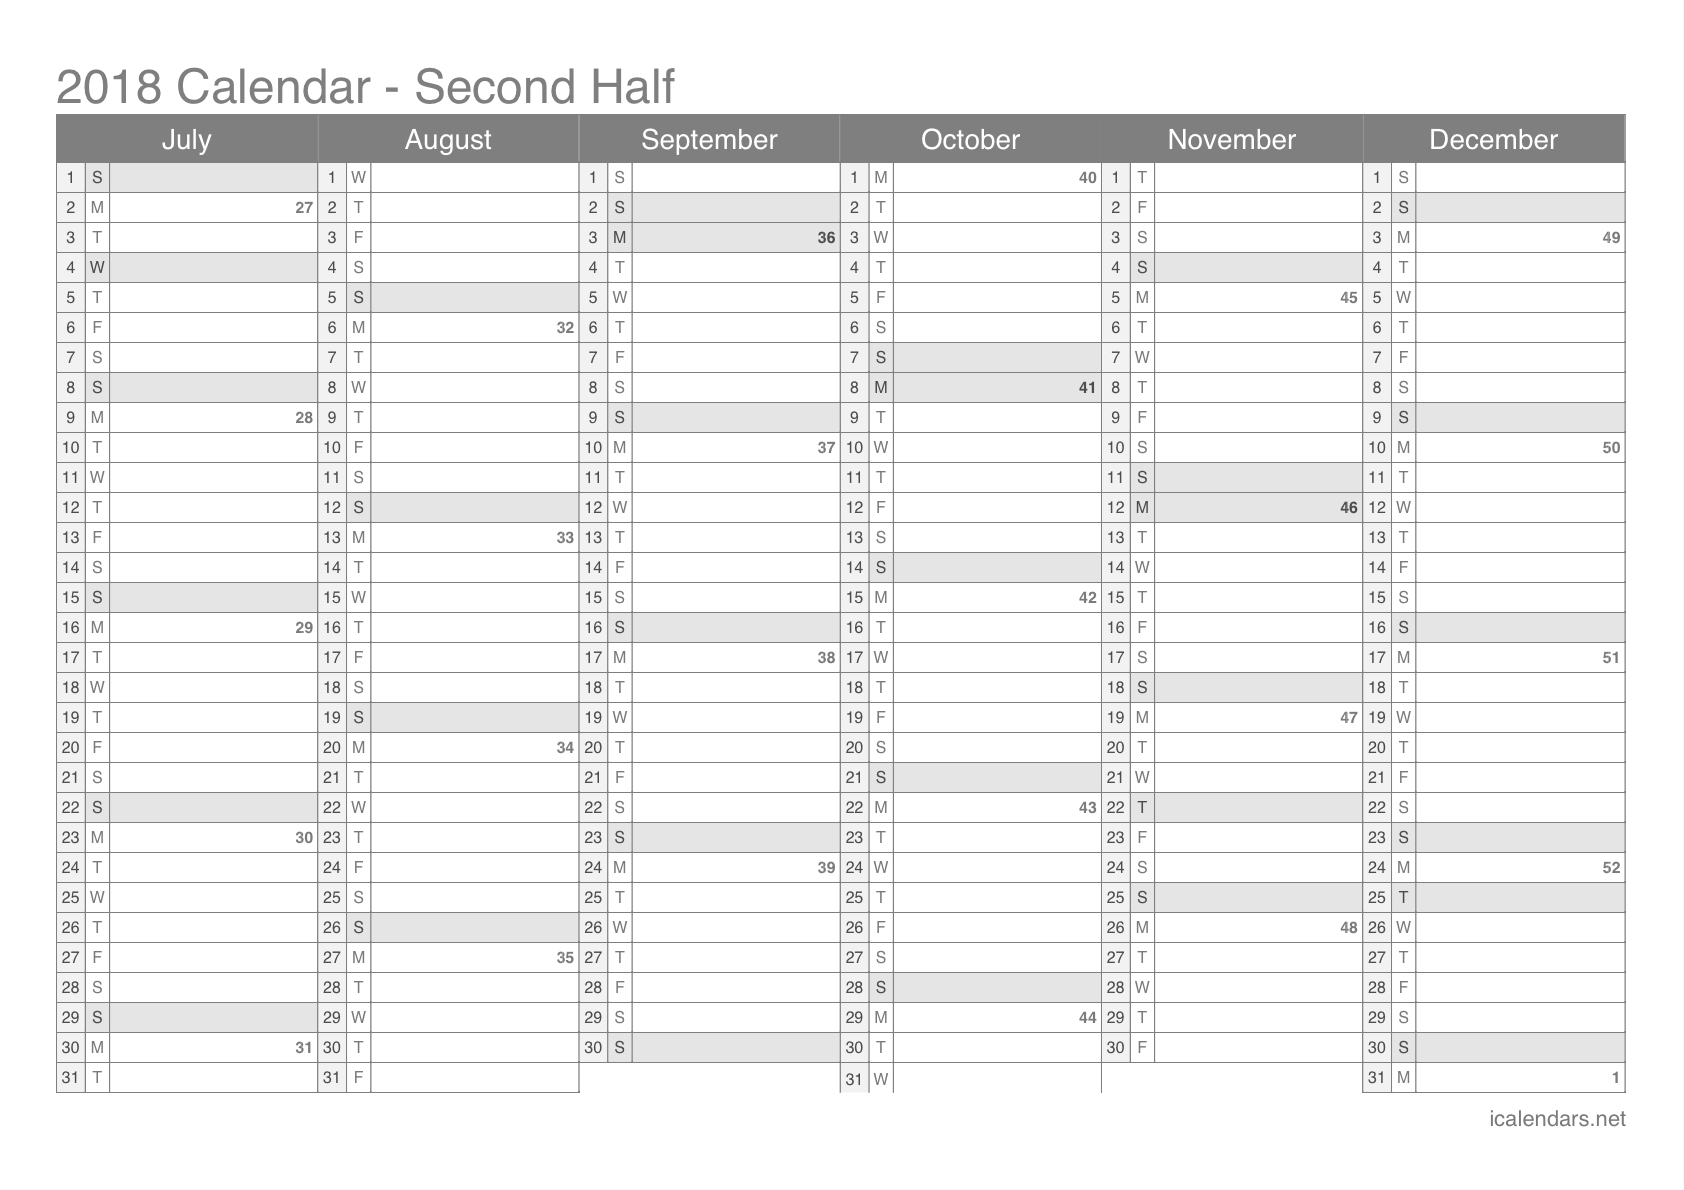 2018 Printable Calendar - Pdf Or Excel - Icalendars in Number Of Weeks In A Year Calendar